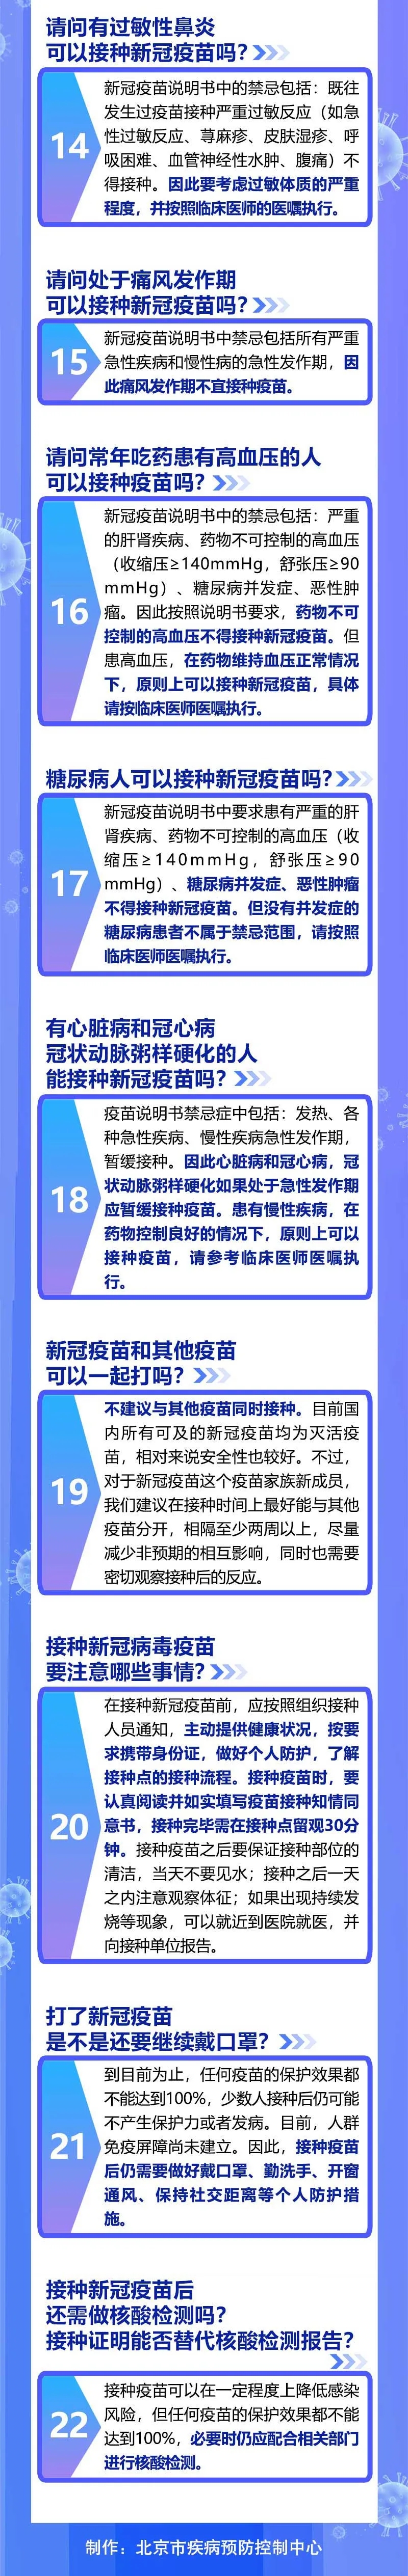 北京市新冠疫苗重点人群接种22问